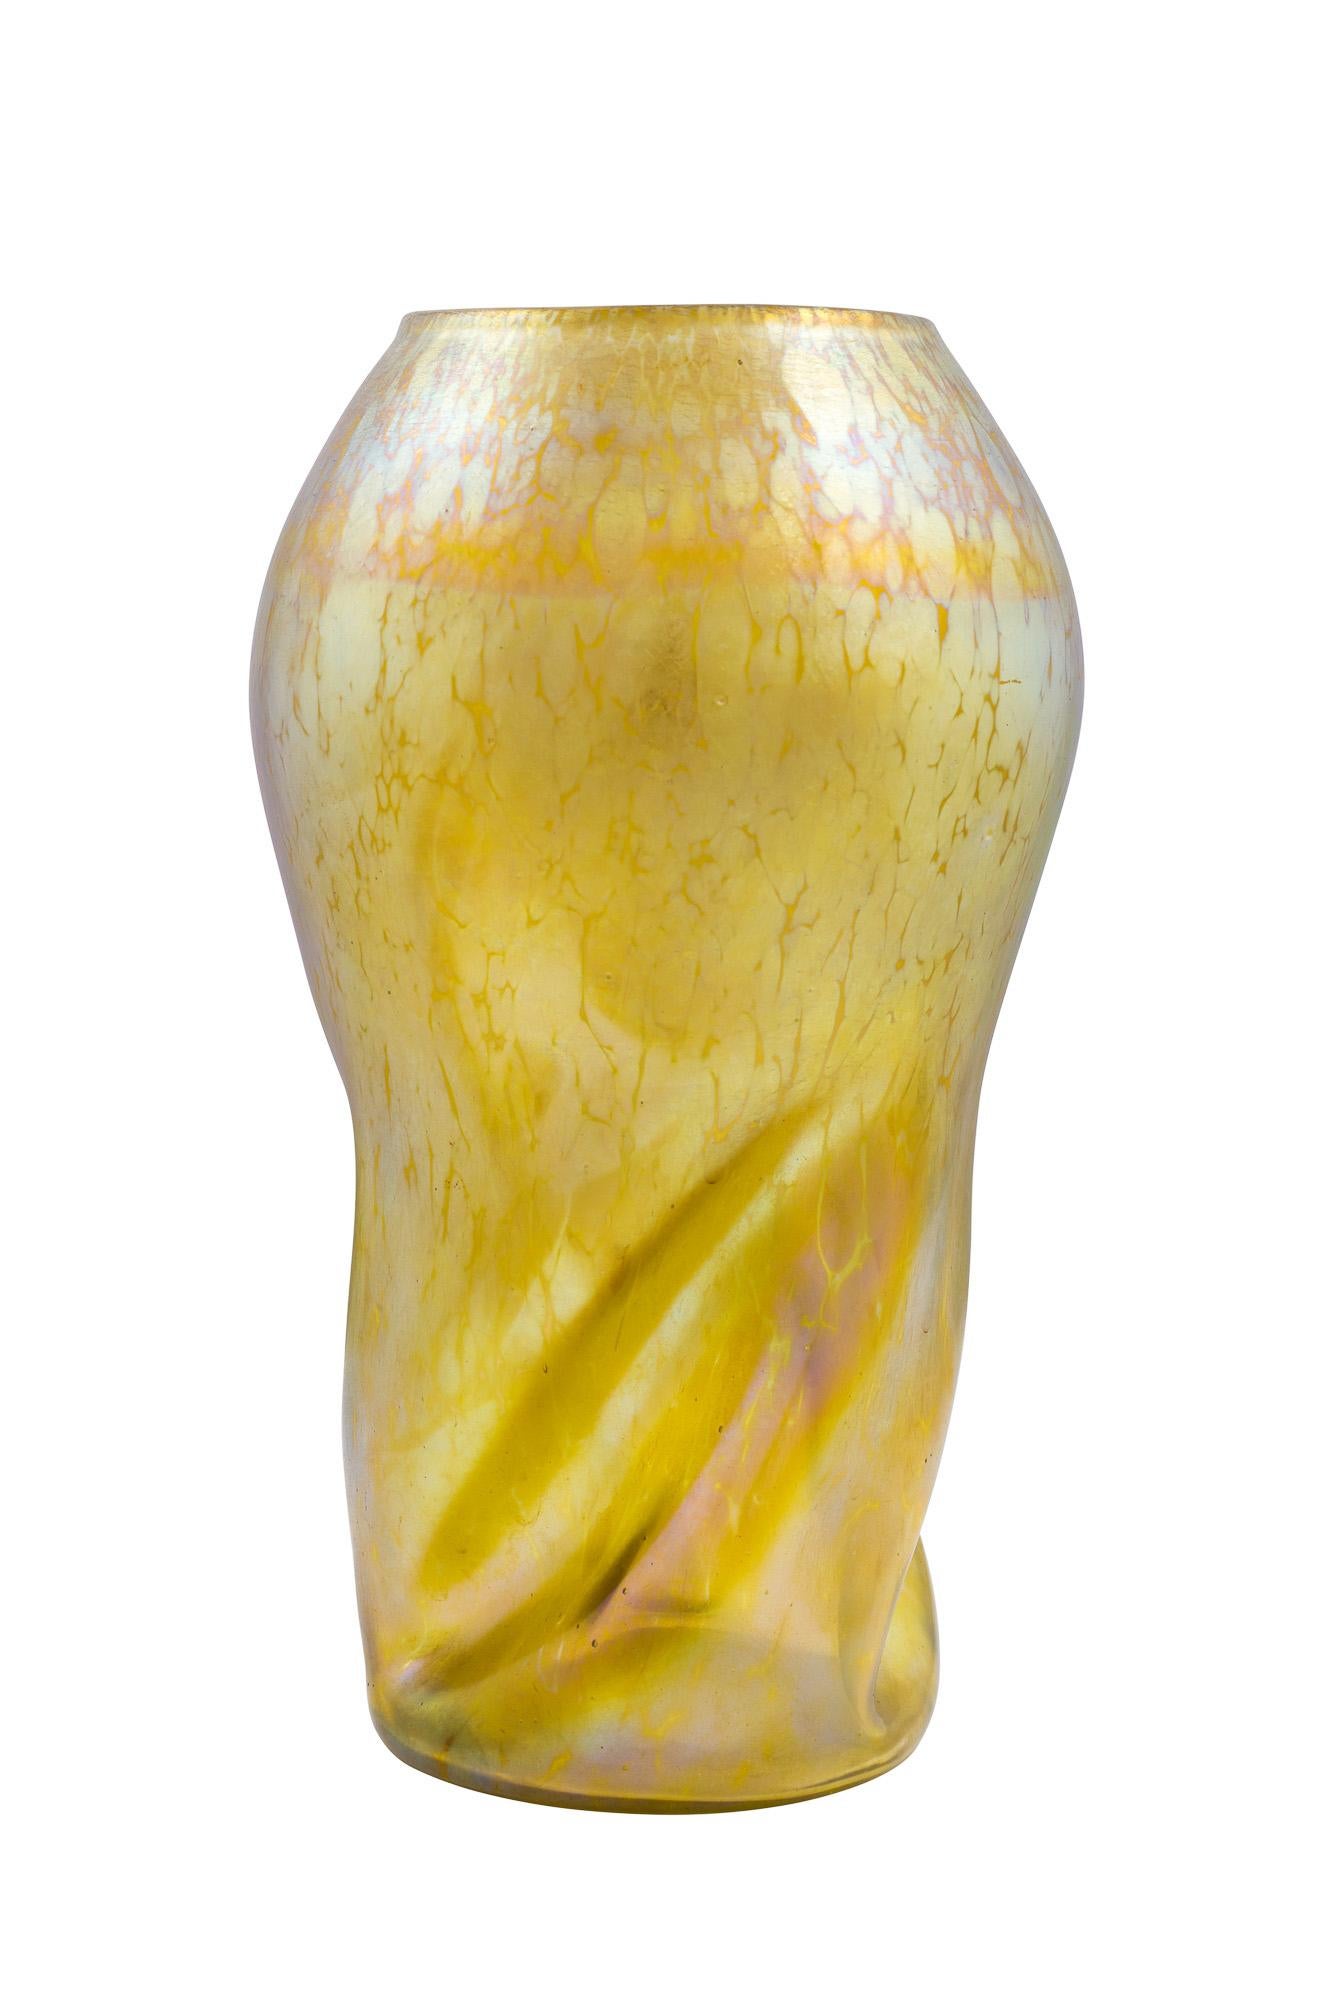 Austrian Loetz Vase Canidia Papillon Twisted Neck circa 1900 Art Nouveau Glass